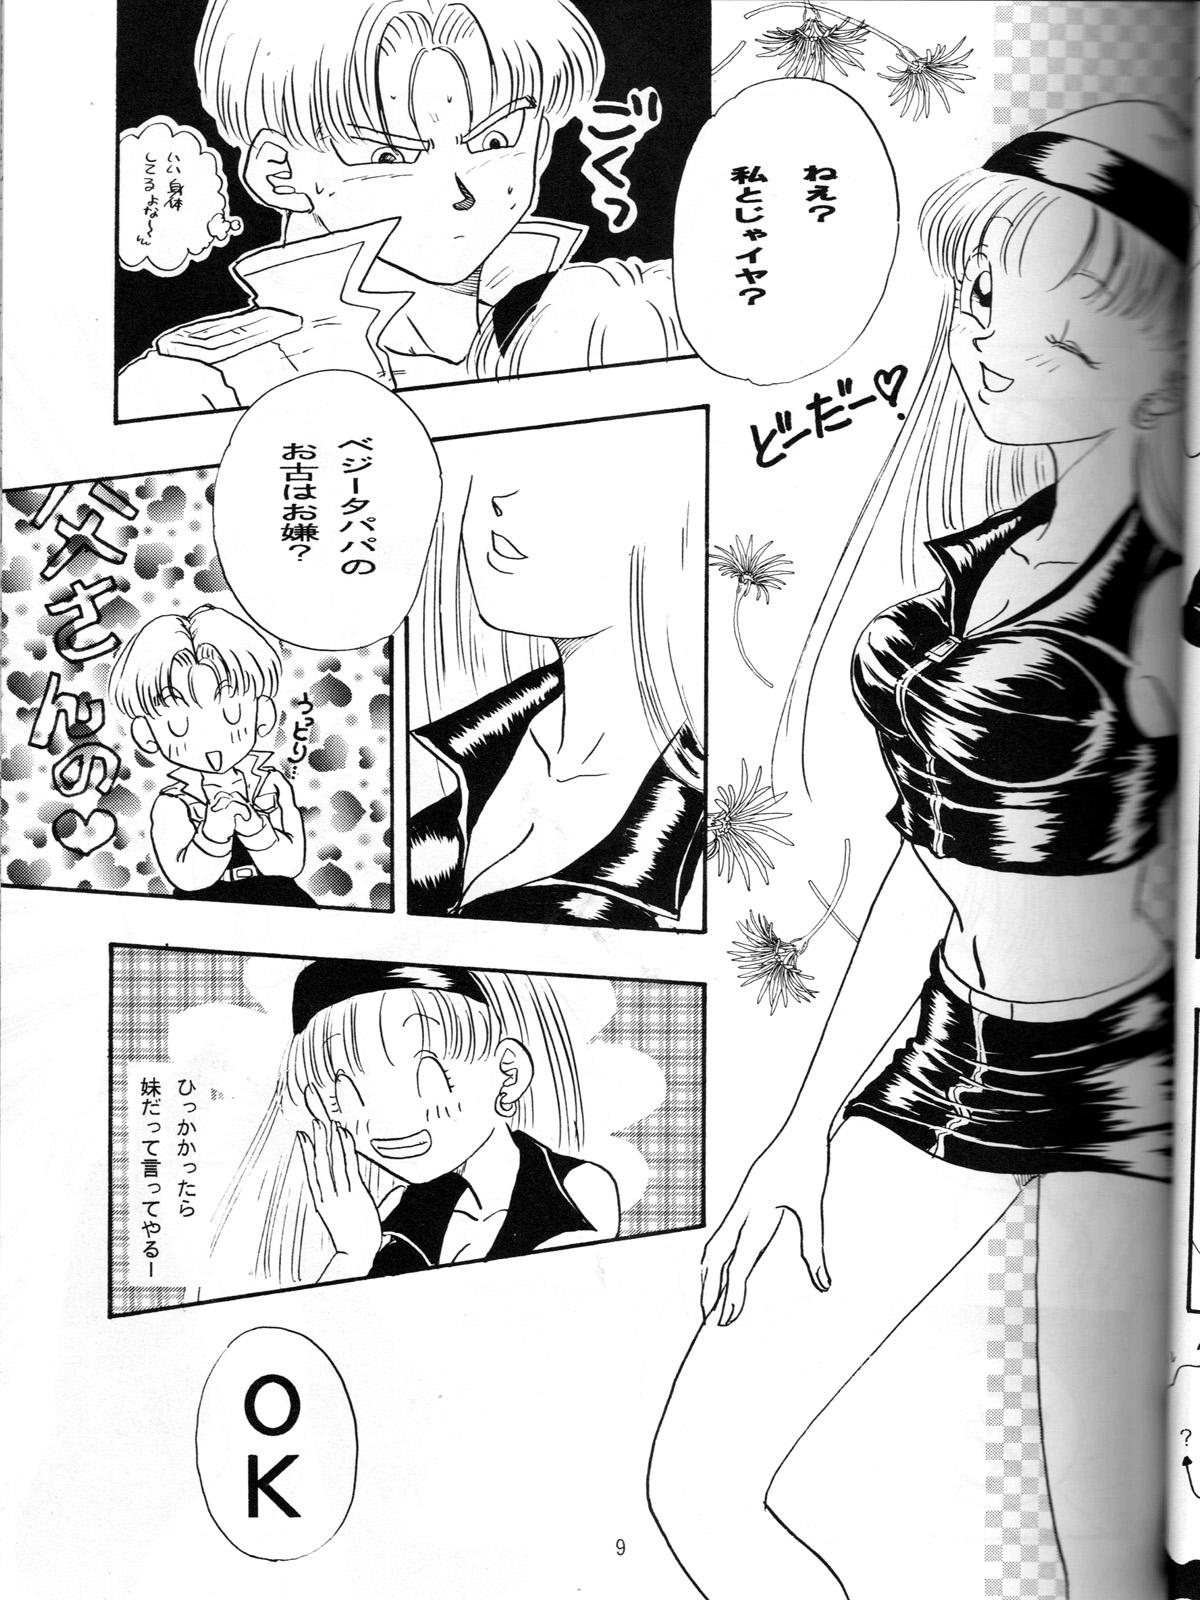 Female Ruri Rui - Dragon ball gt Piss - Page 8